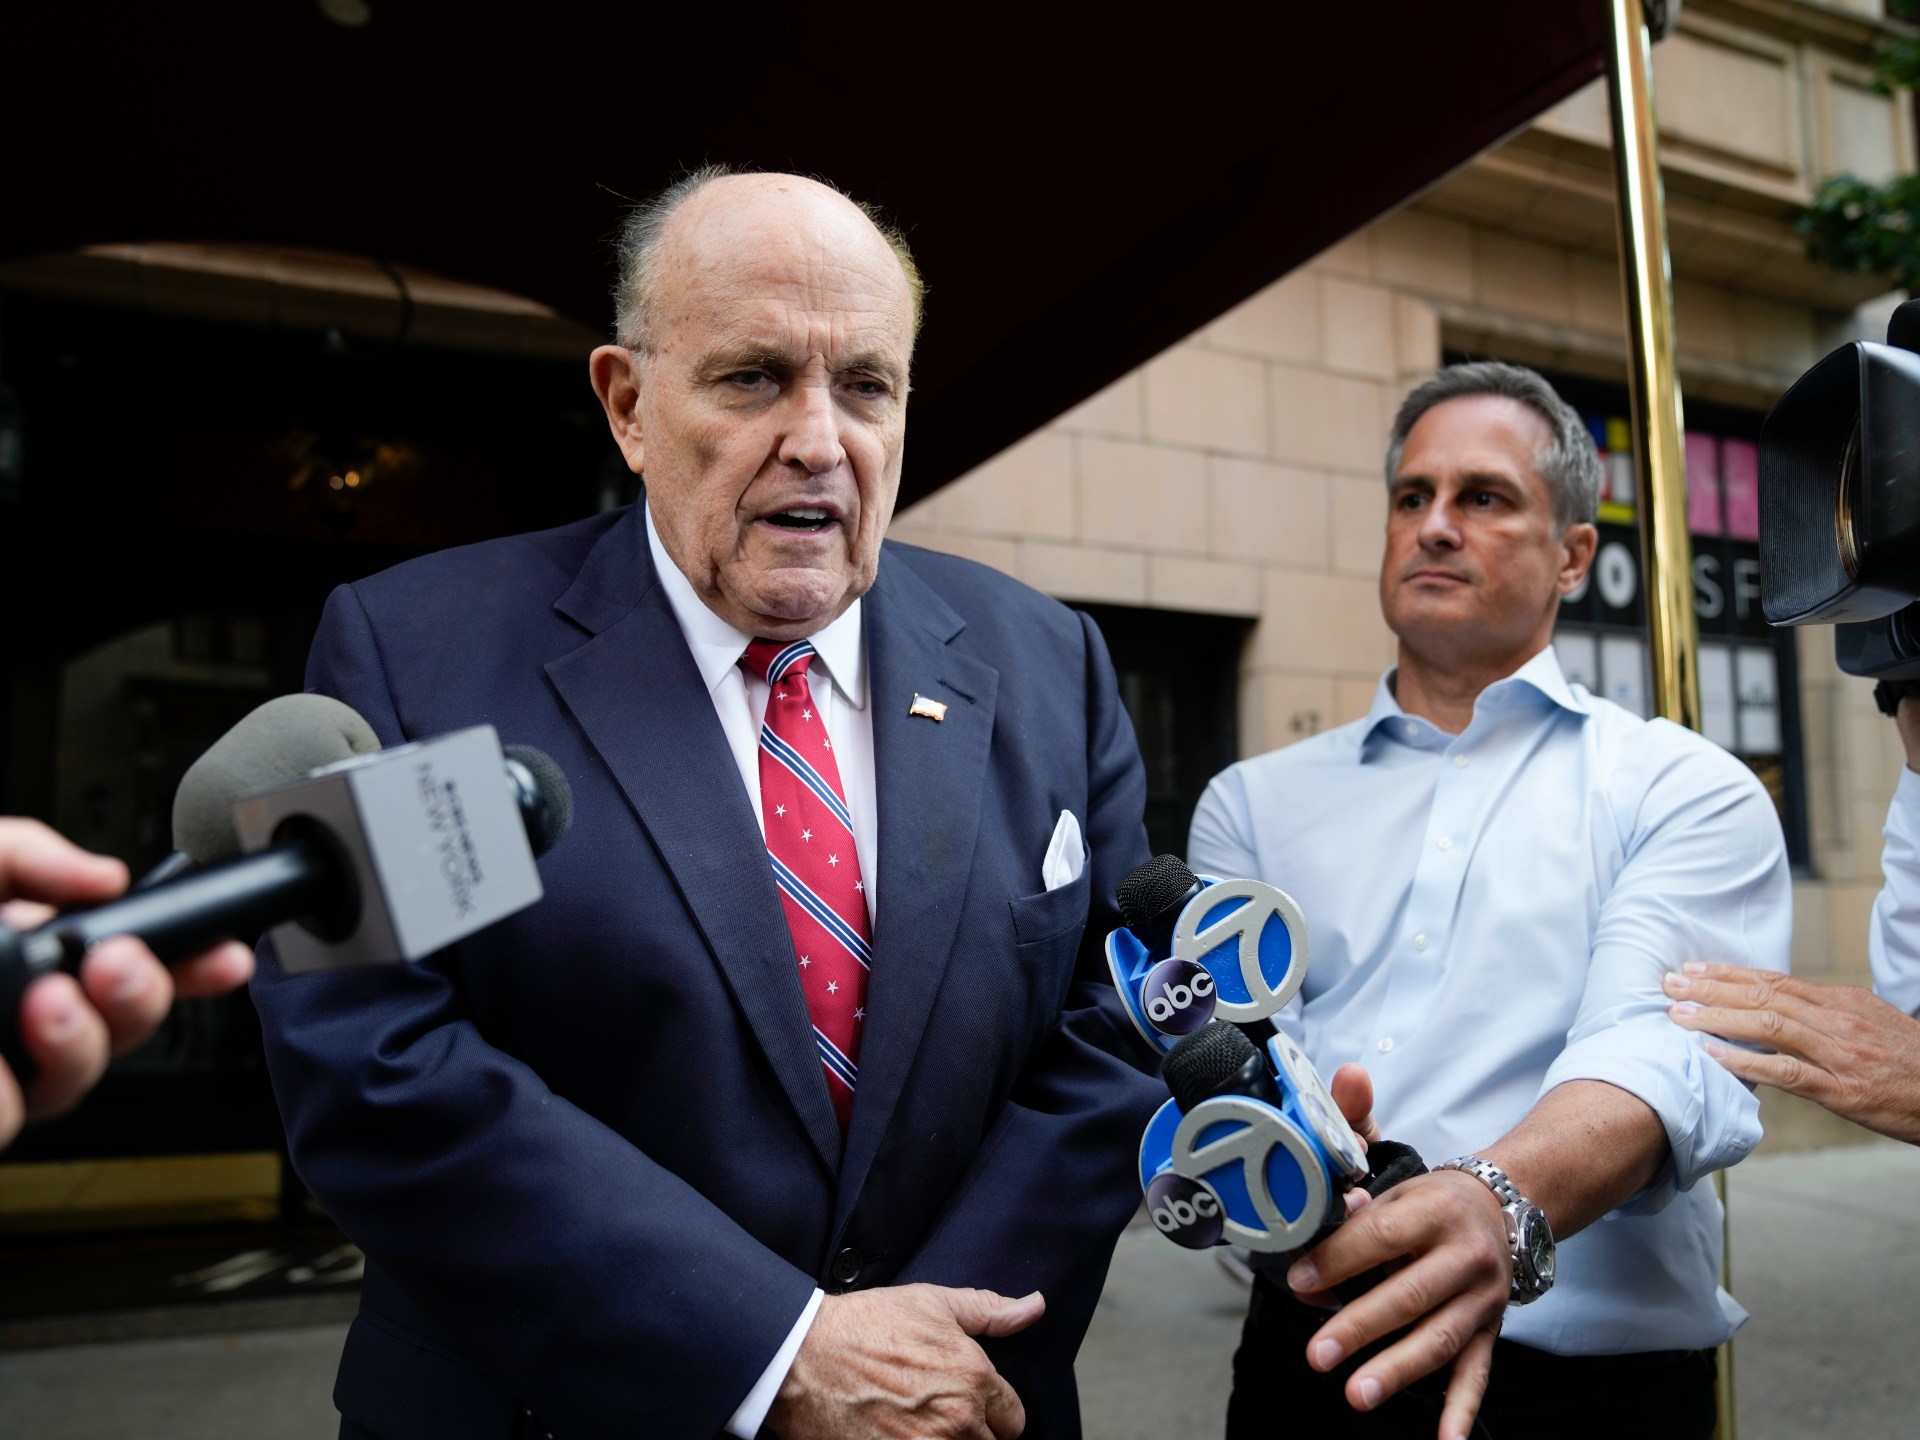 Giuliani, exabogado de Trump, fue condenado a pagar 148 millones de dólares por difamar a trabajadores electorales  Noticias